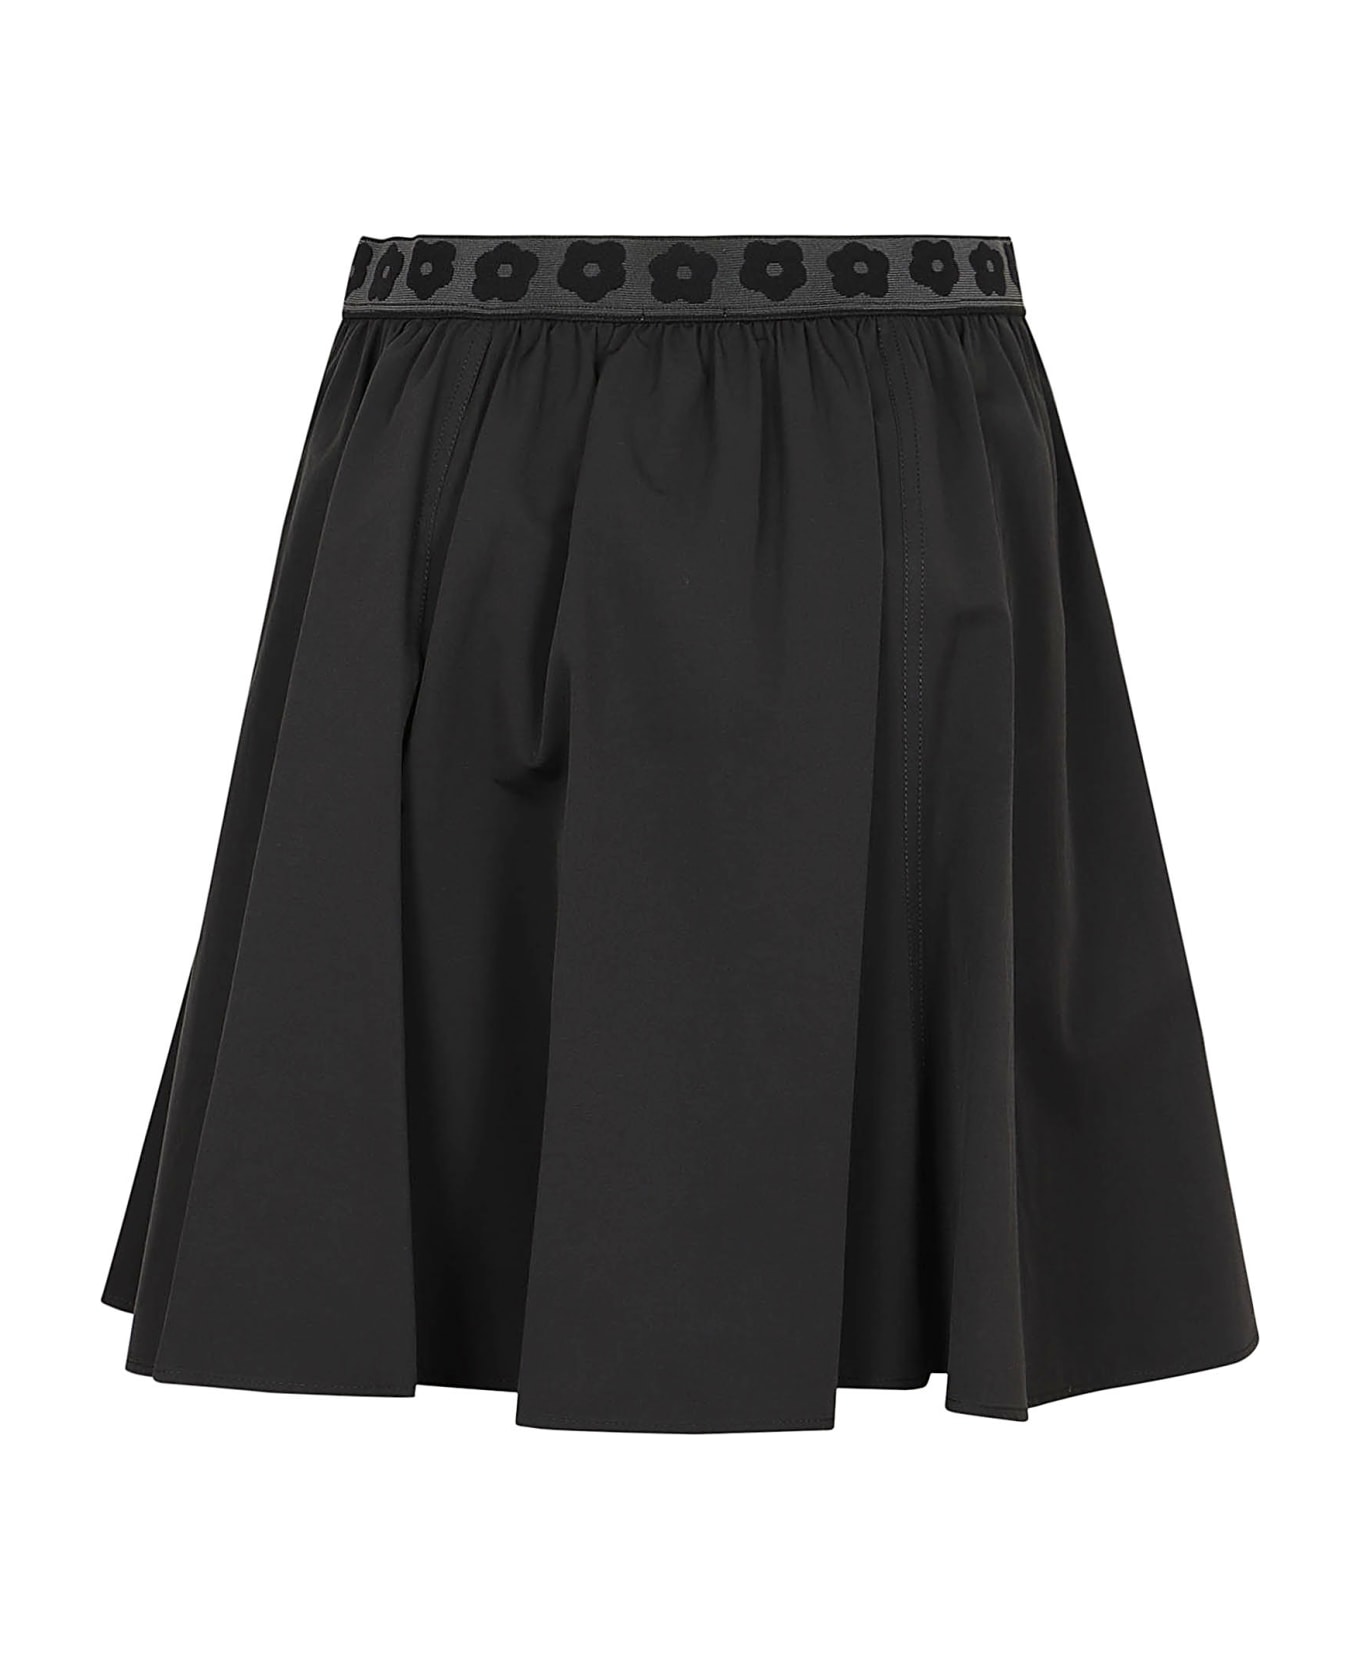 Kenzo Boke 2.0 Short Skirt - Black スカート